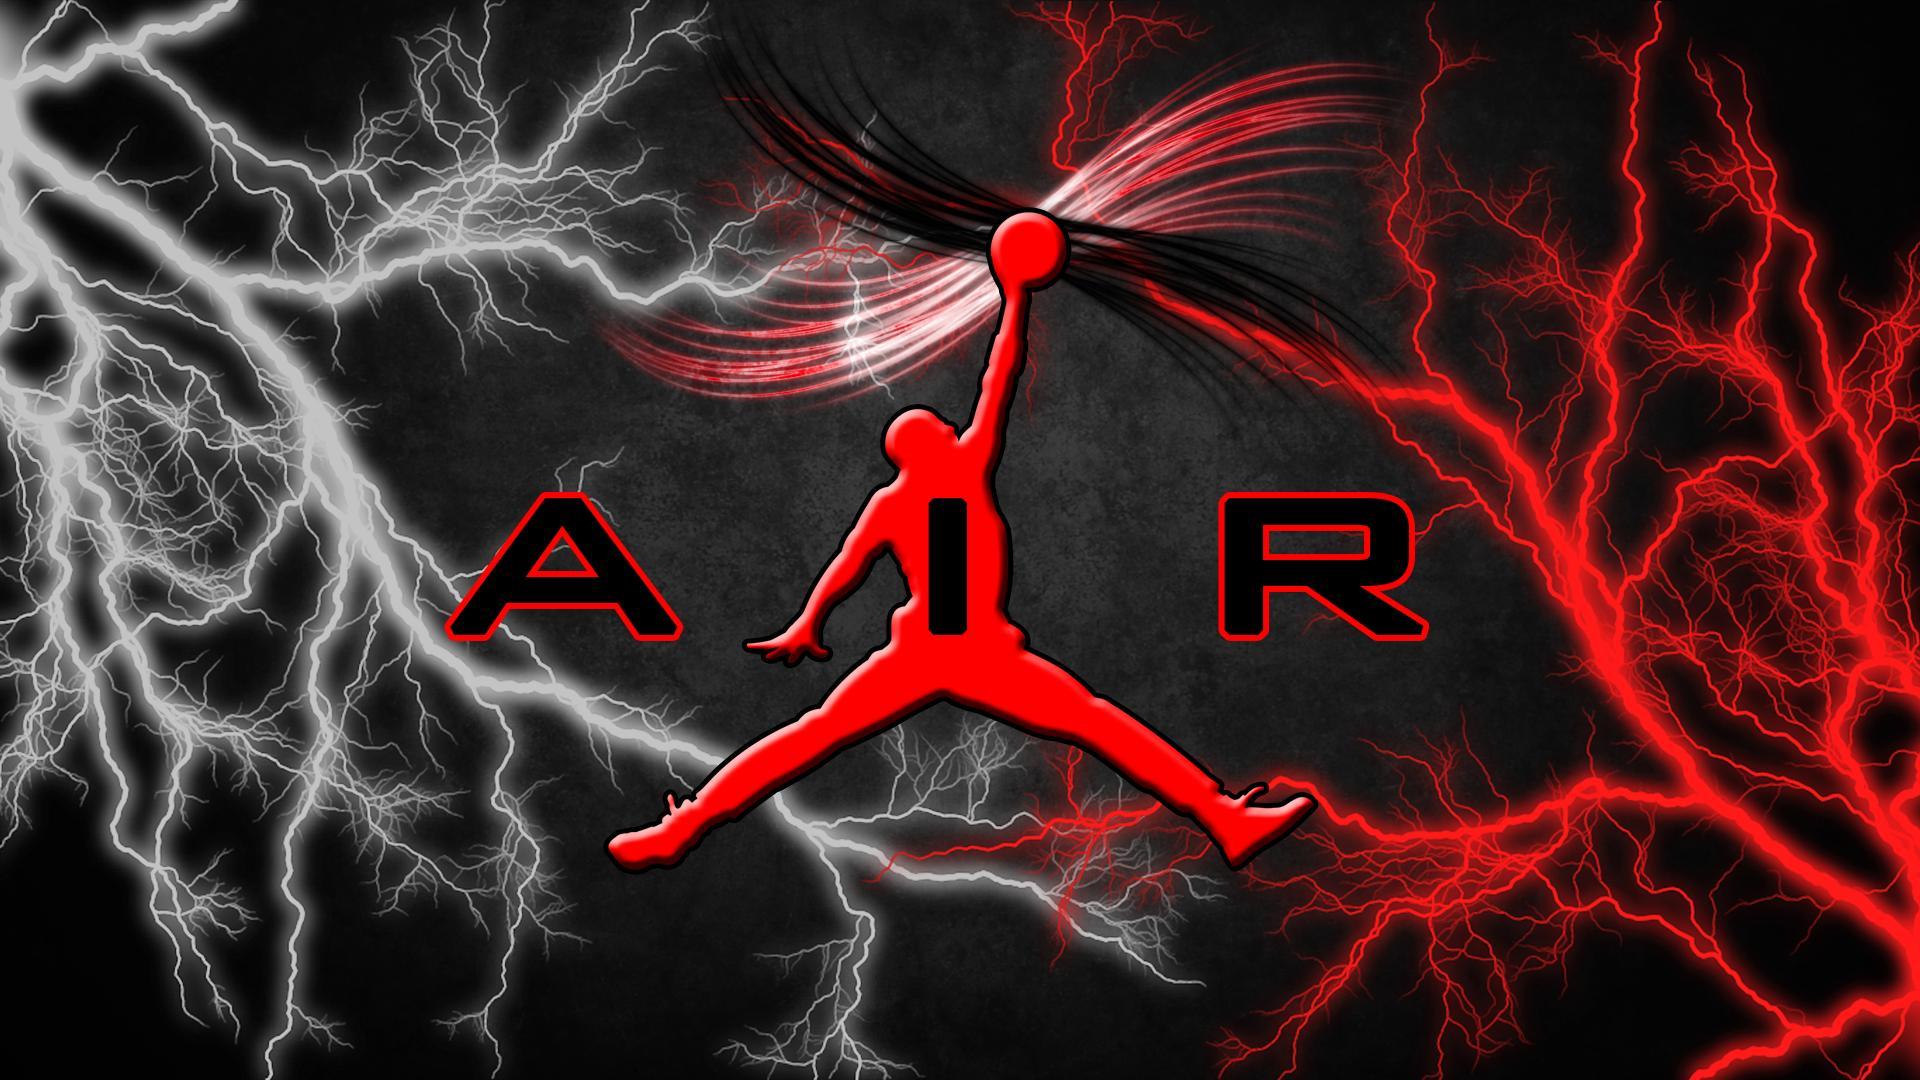 Download Free Air Jordan Shoes Wallpaper